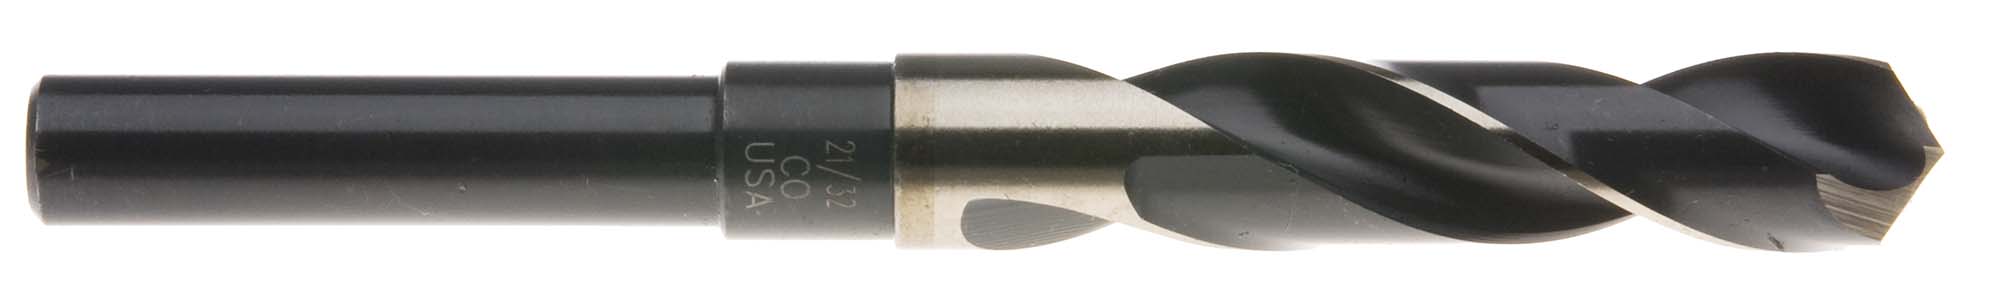 27/32" S and D Drill (1/2" shank) USA Cobalt